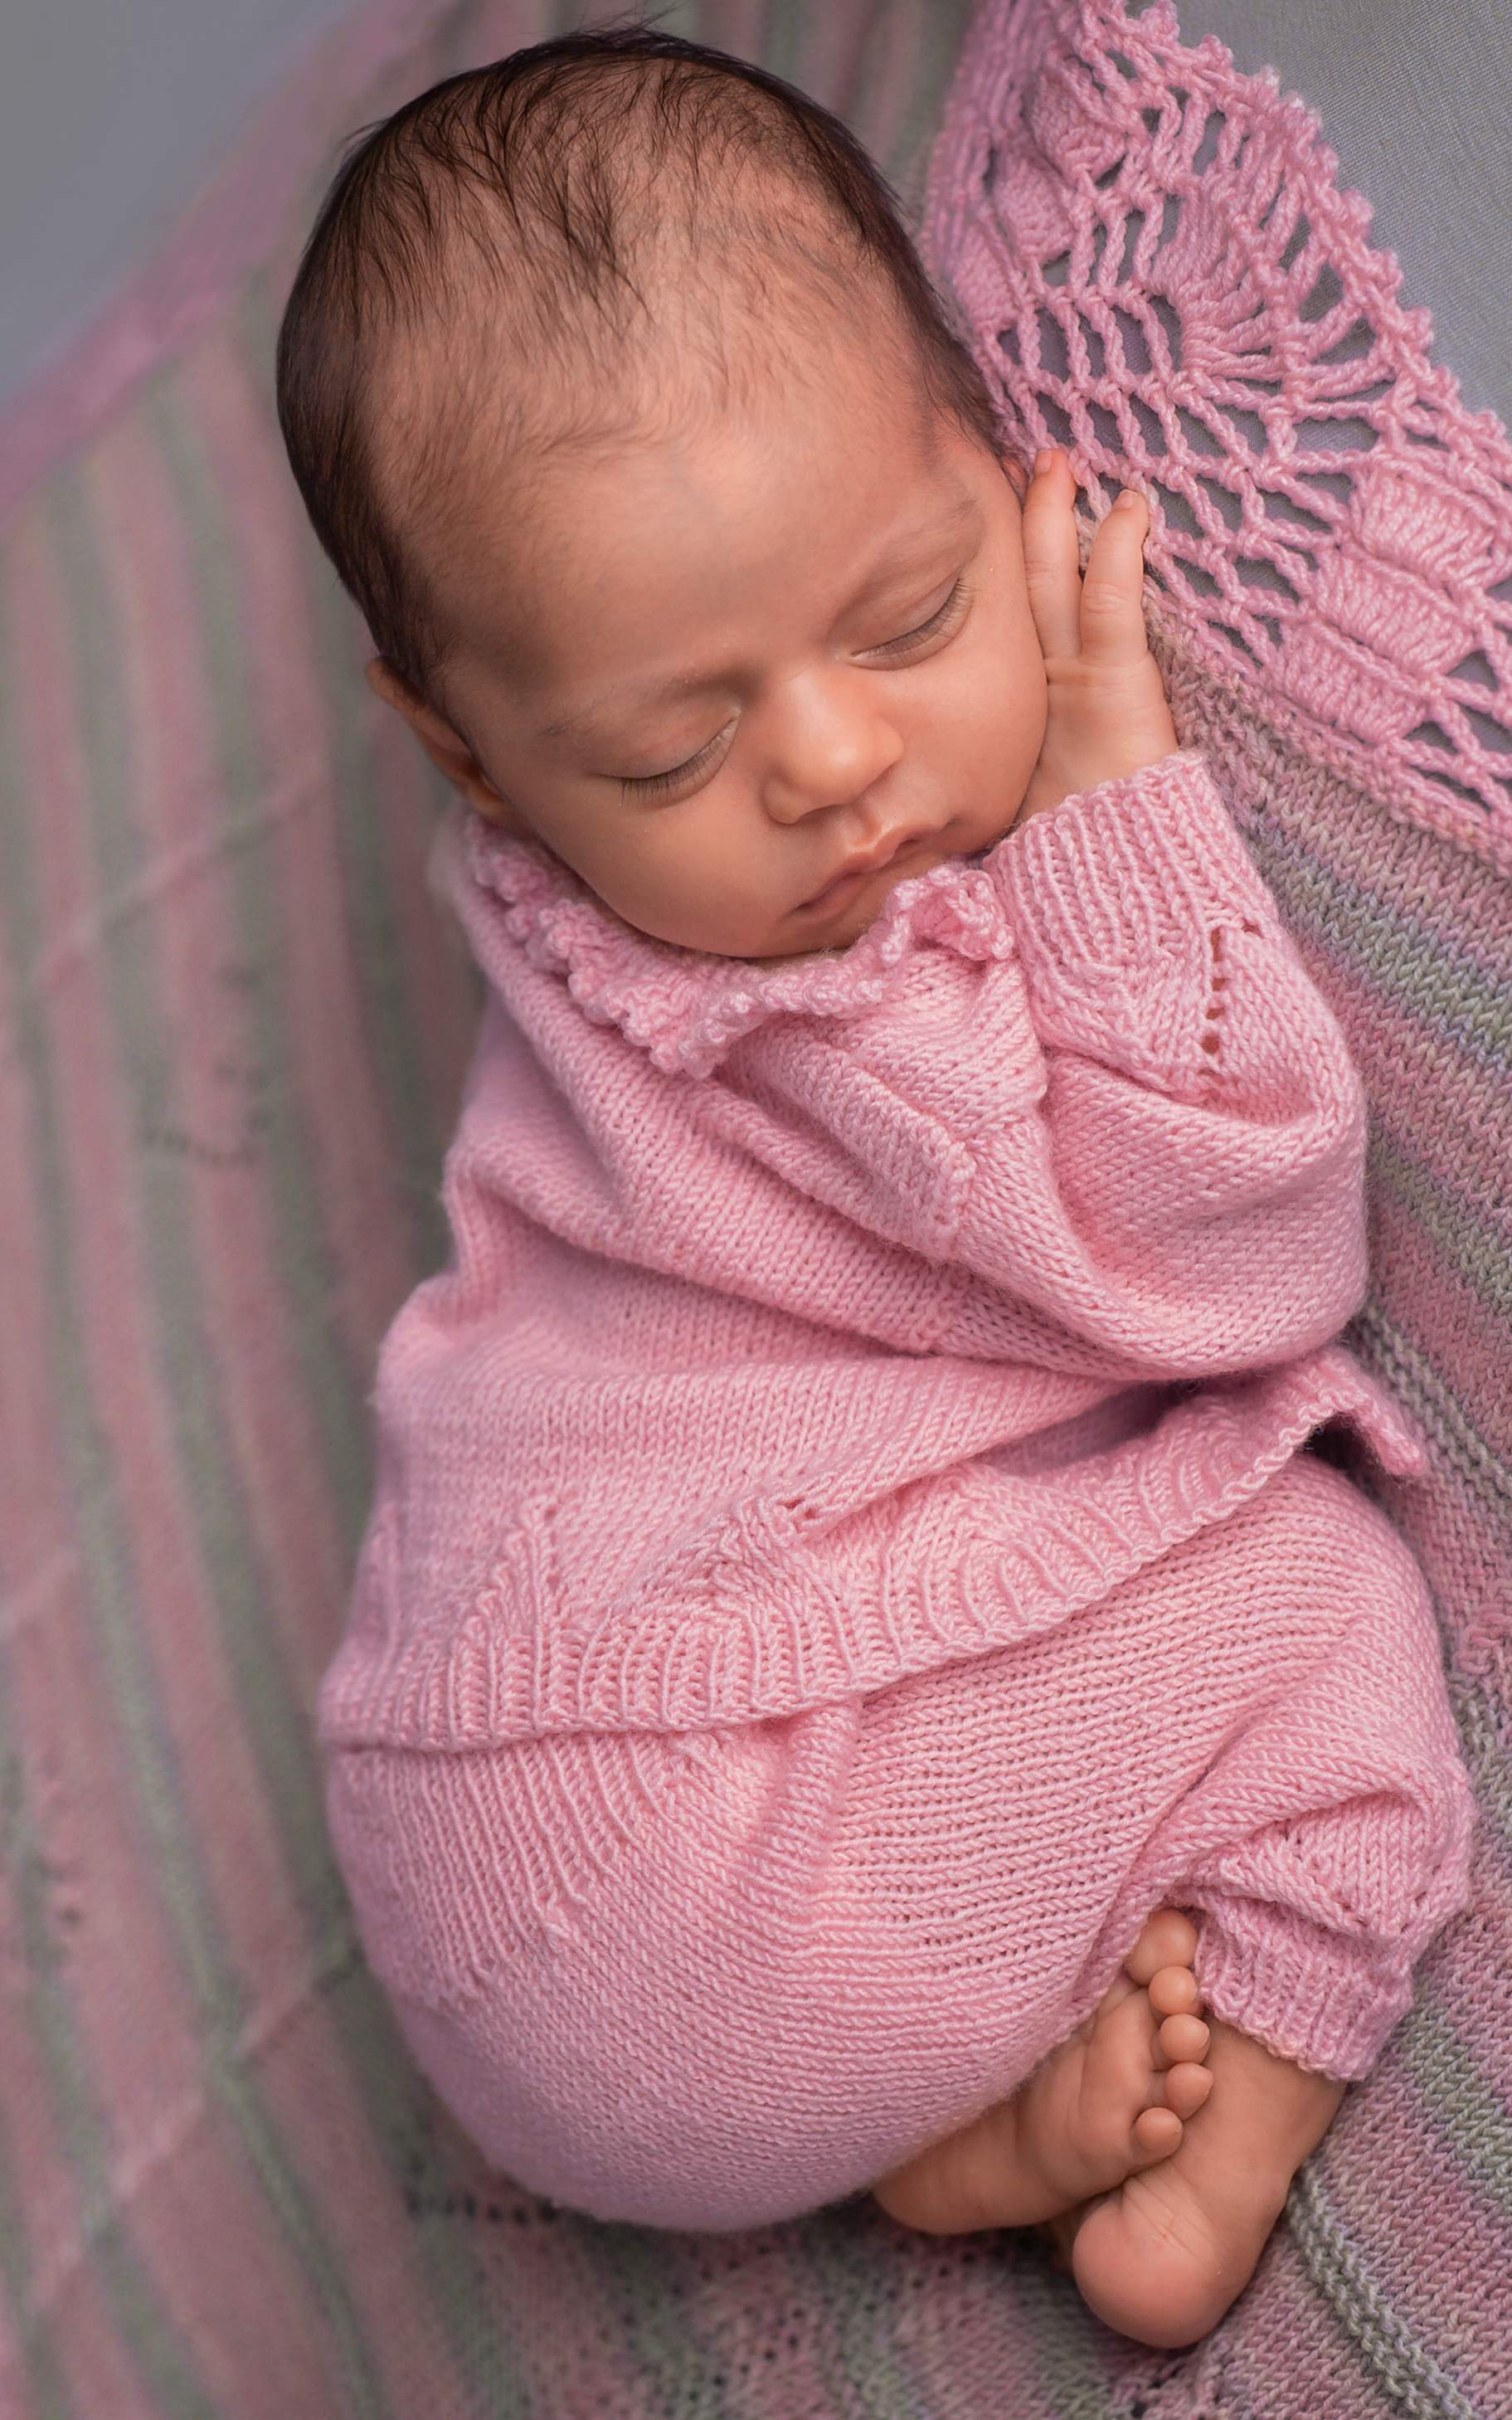 Baby Hose mit Ajourmuster - Strickset von LANA GROSSA jetzt online kaufen bei OONIQUE